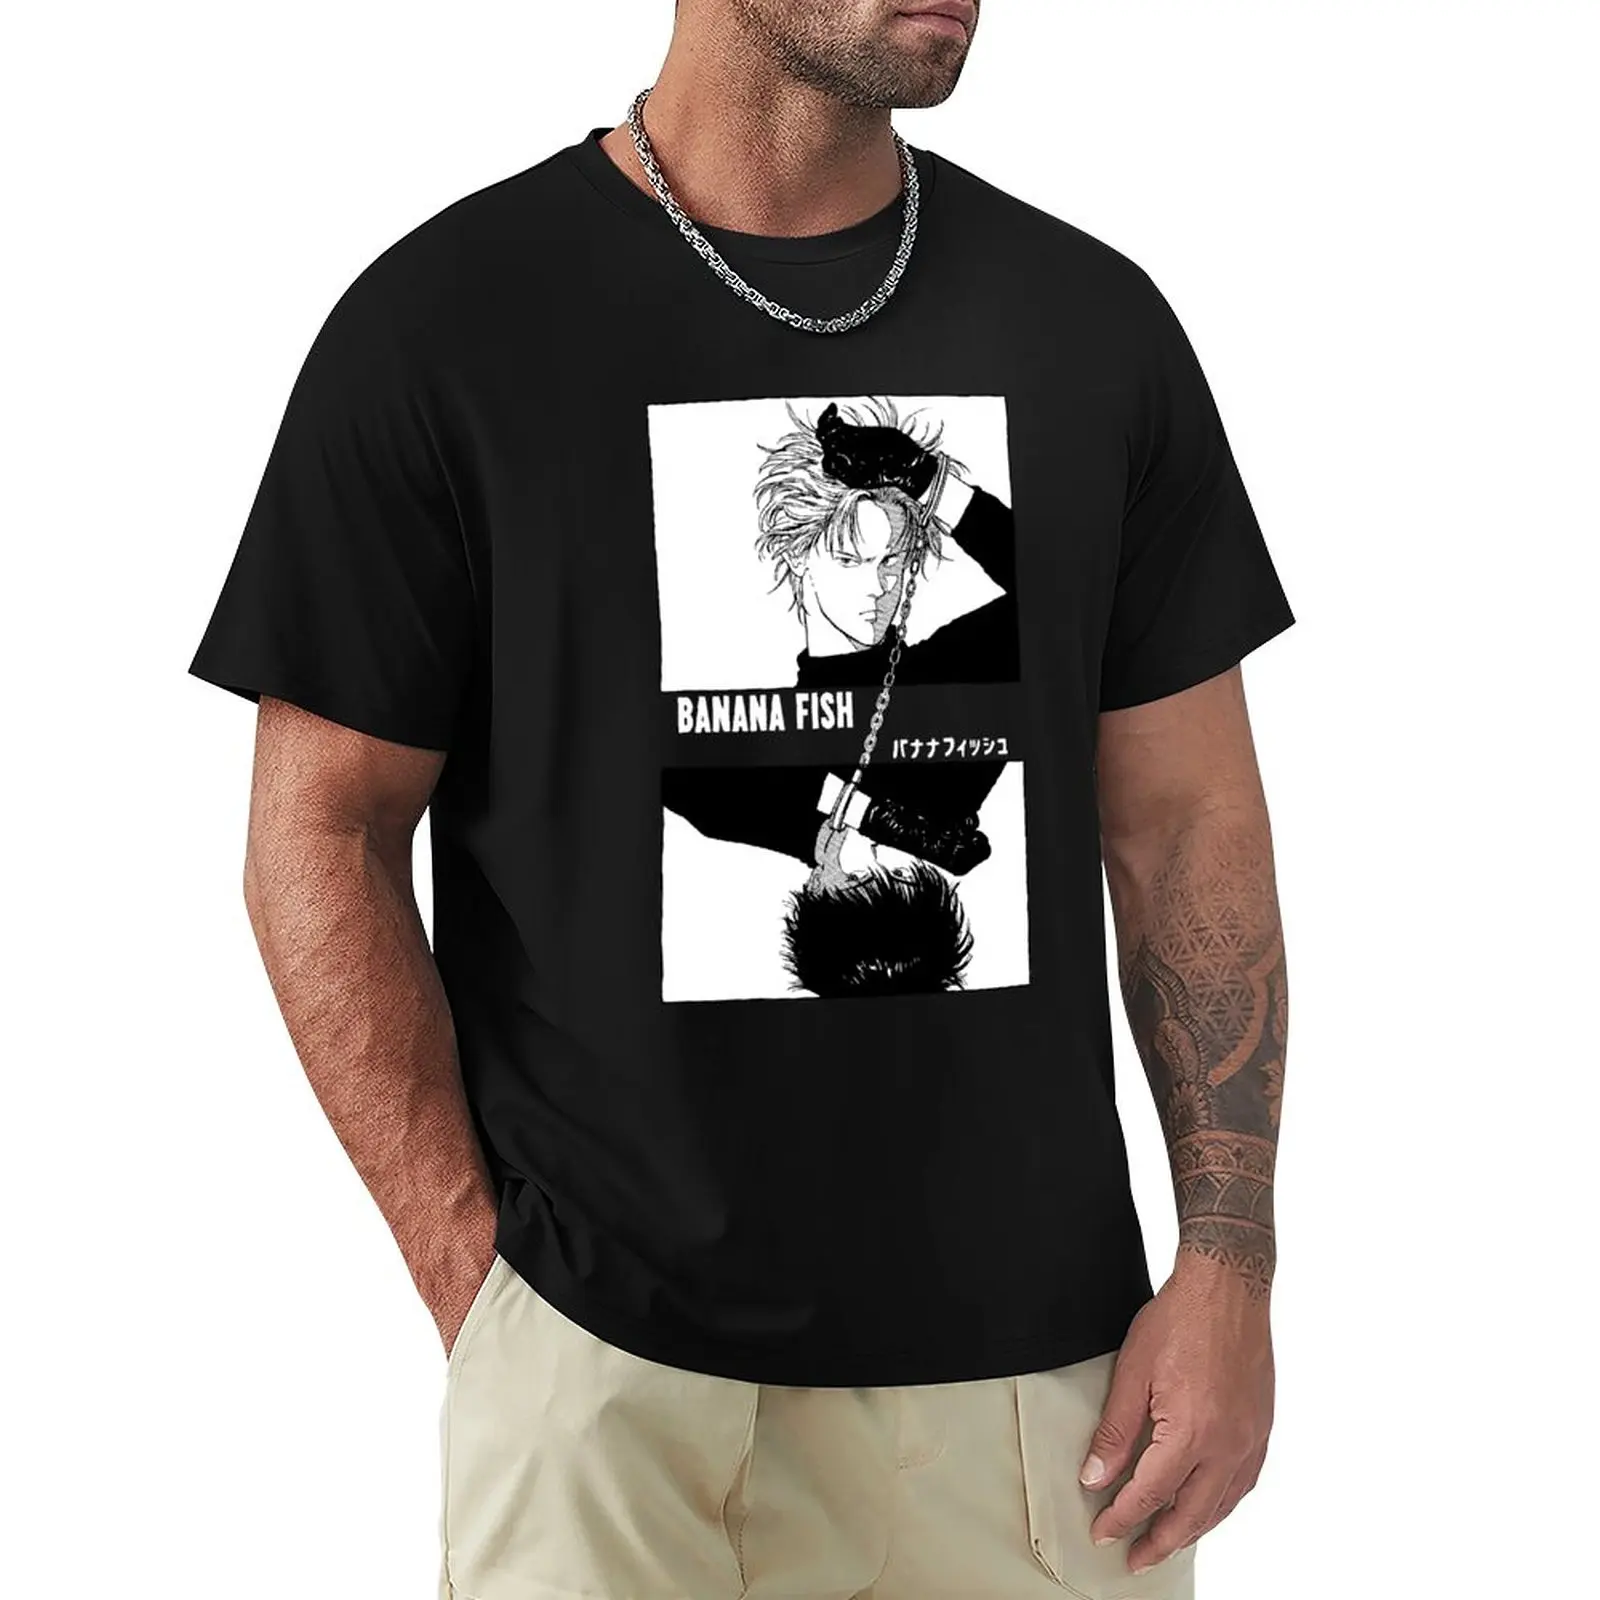 Мужская футболка с БАНАНОВЫМИ рыбками -цепочками, летняя одежда, короткая футболка, футболки для мужчин